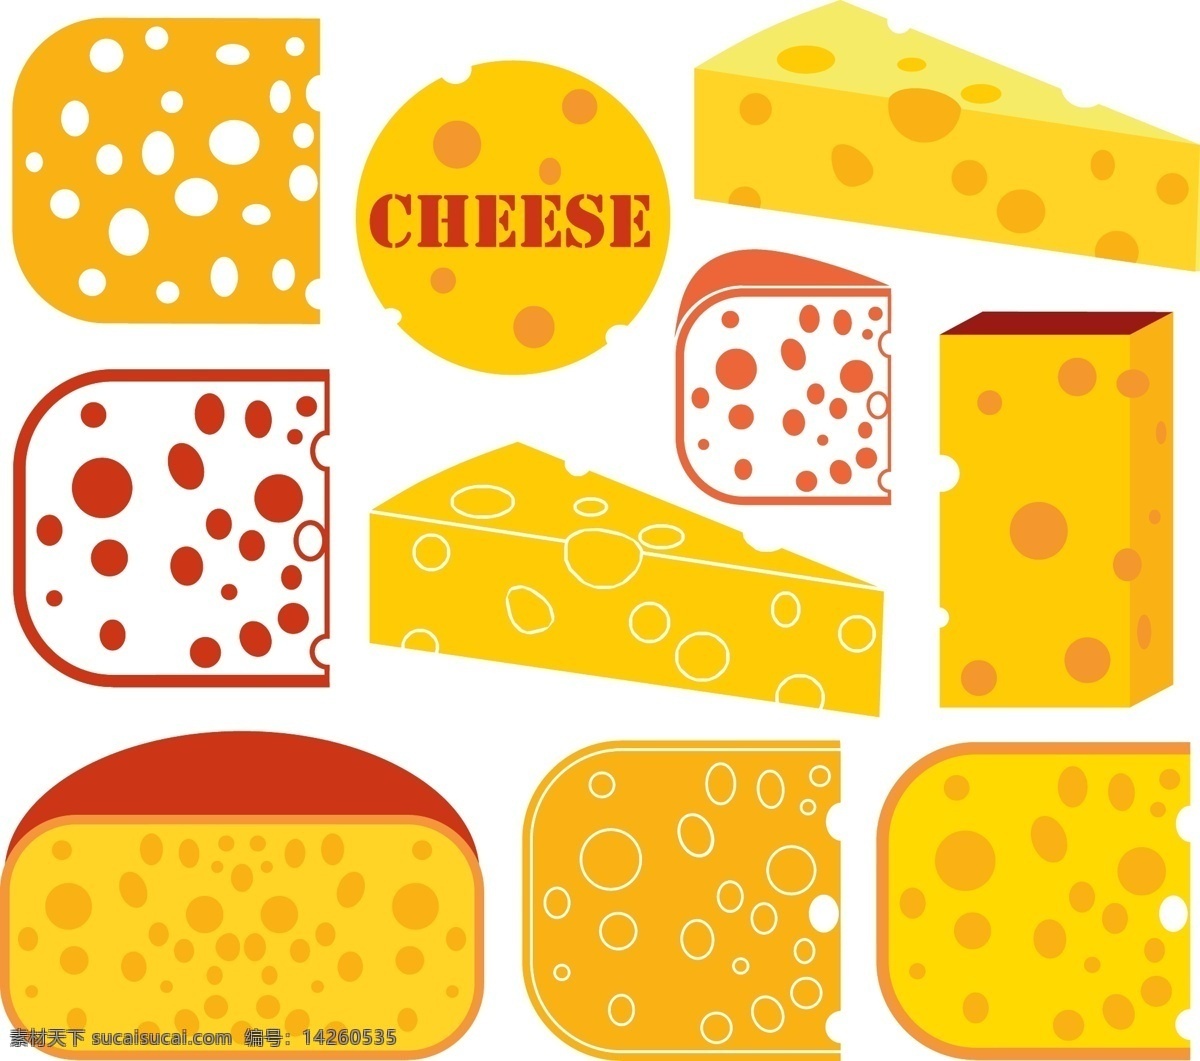 水彩 创意 奶酪 矢量 矢量素材 设计素材 背景素材